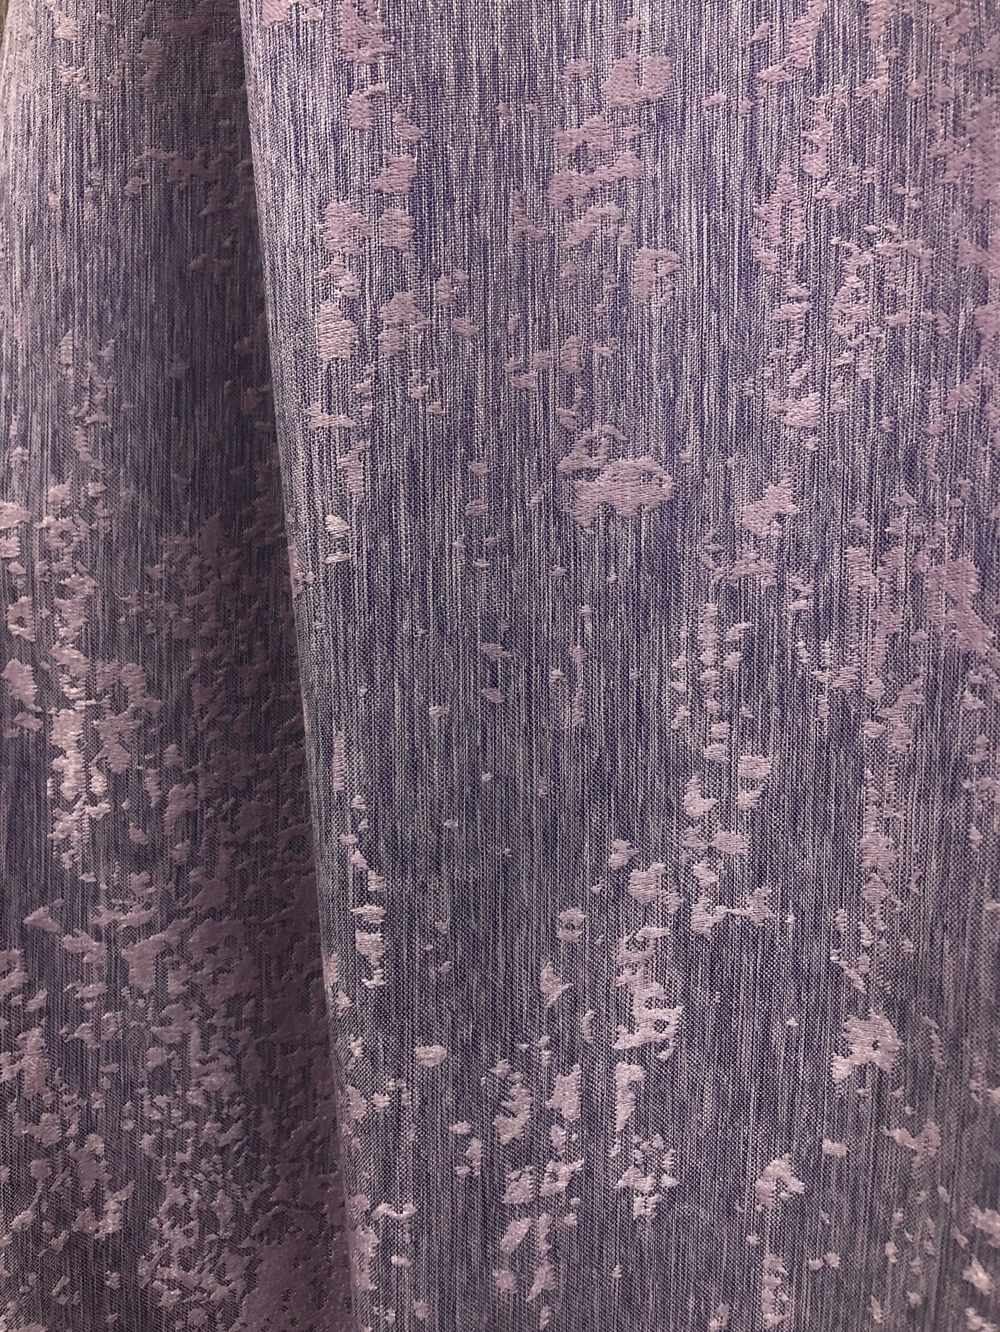 Ткань портьерная Софт мраморный, цвет фиолетовый, артикул 327745